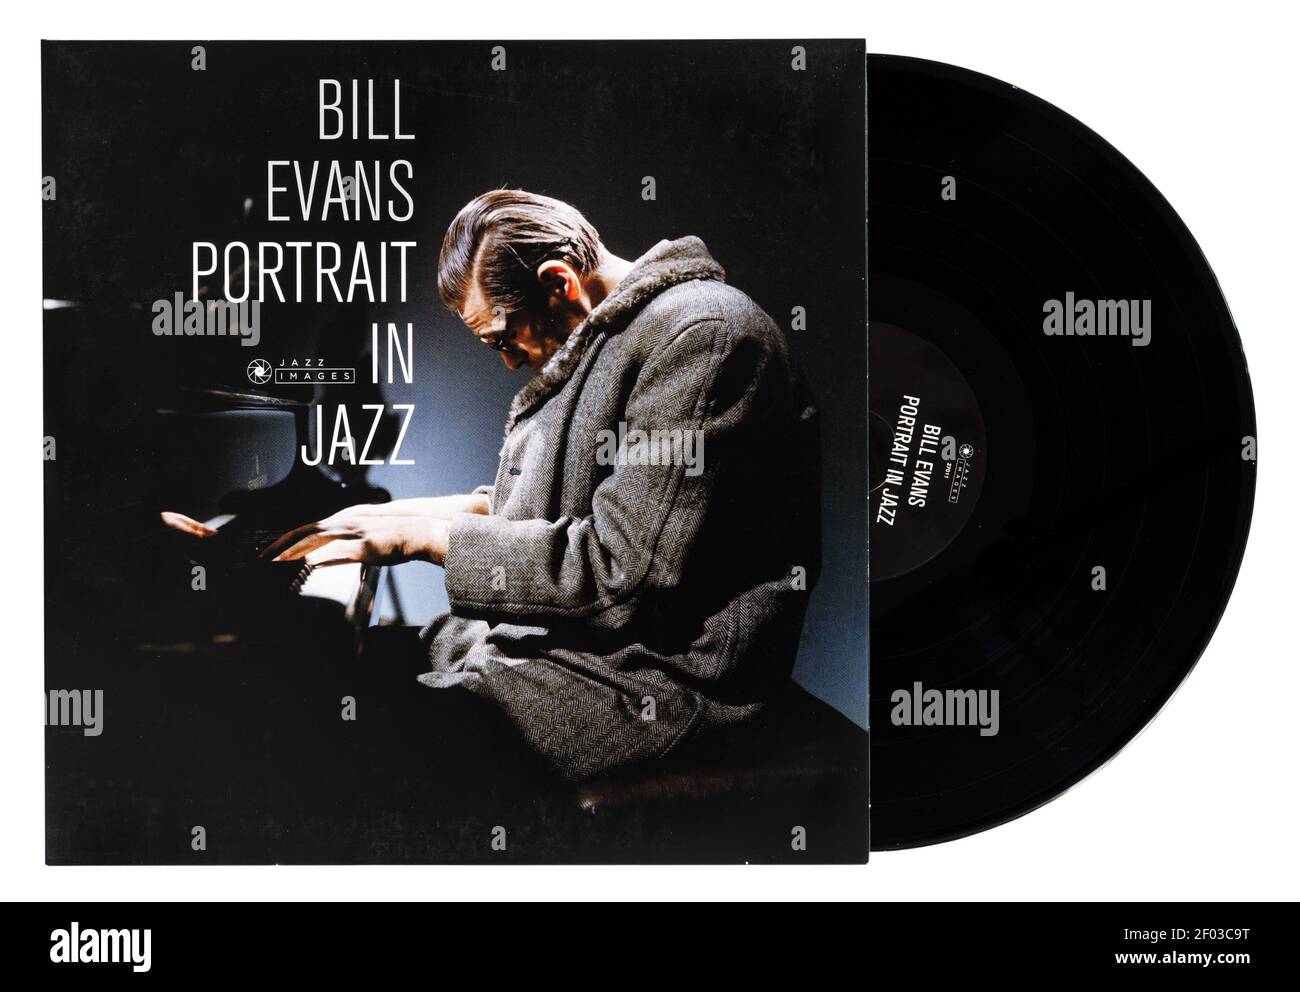 Bill Evans Portrait in Jazz vinyl jazz album by Bill Evans Stock Photo